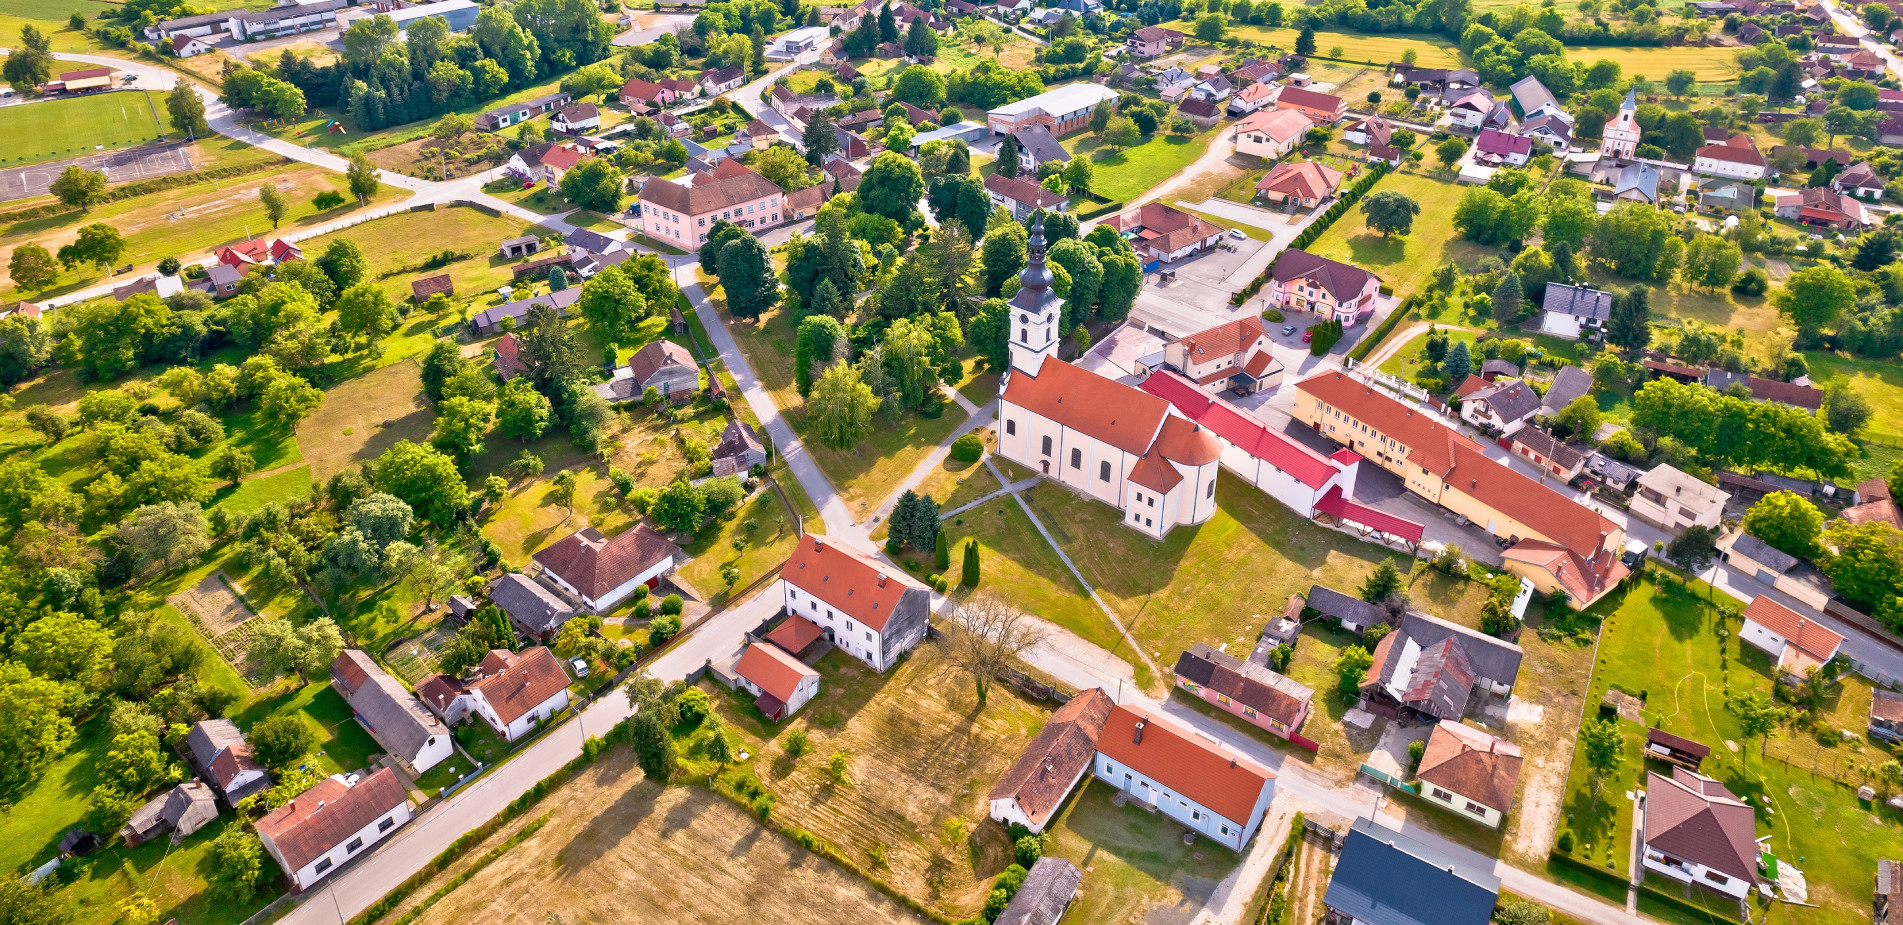 Αυτή η γραφική πόλη στην Κροατία πουλά σπίτια για μόλις 13 σεντς&#8230; αλλά υπάρχει μια παγίδα